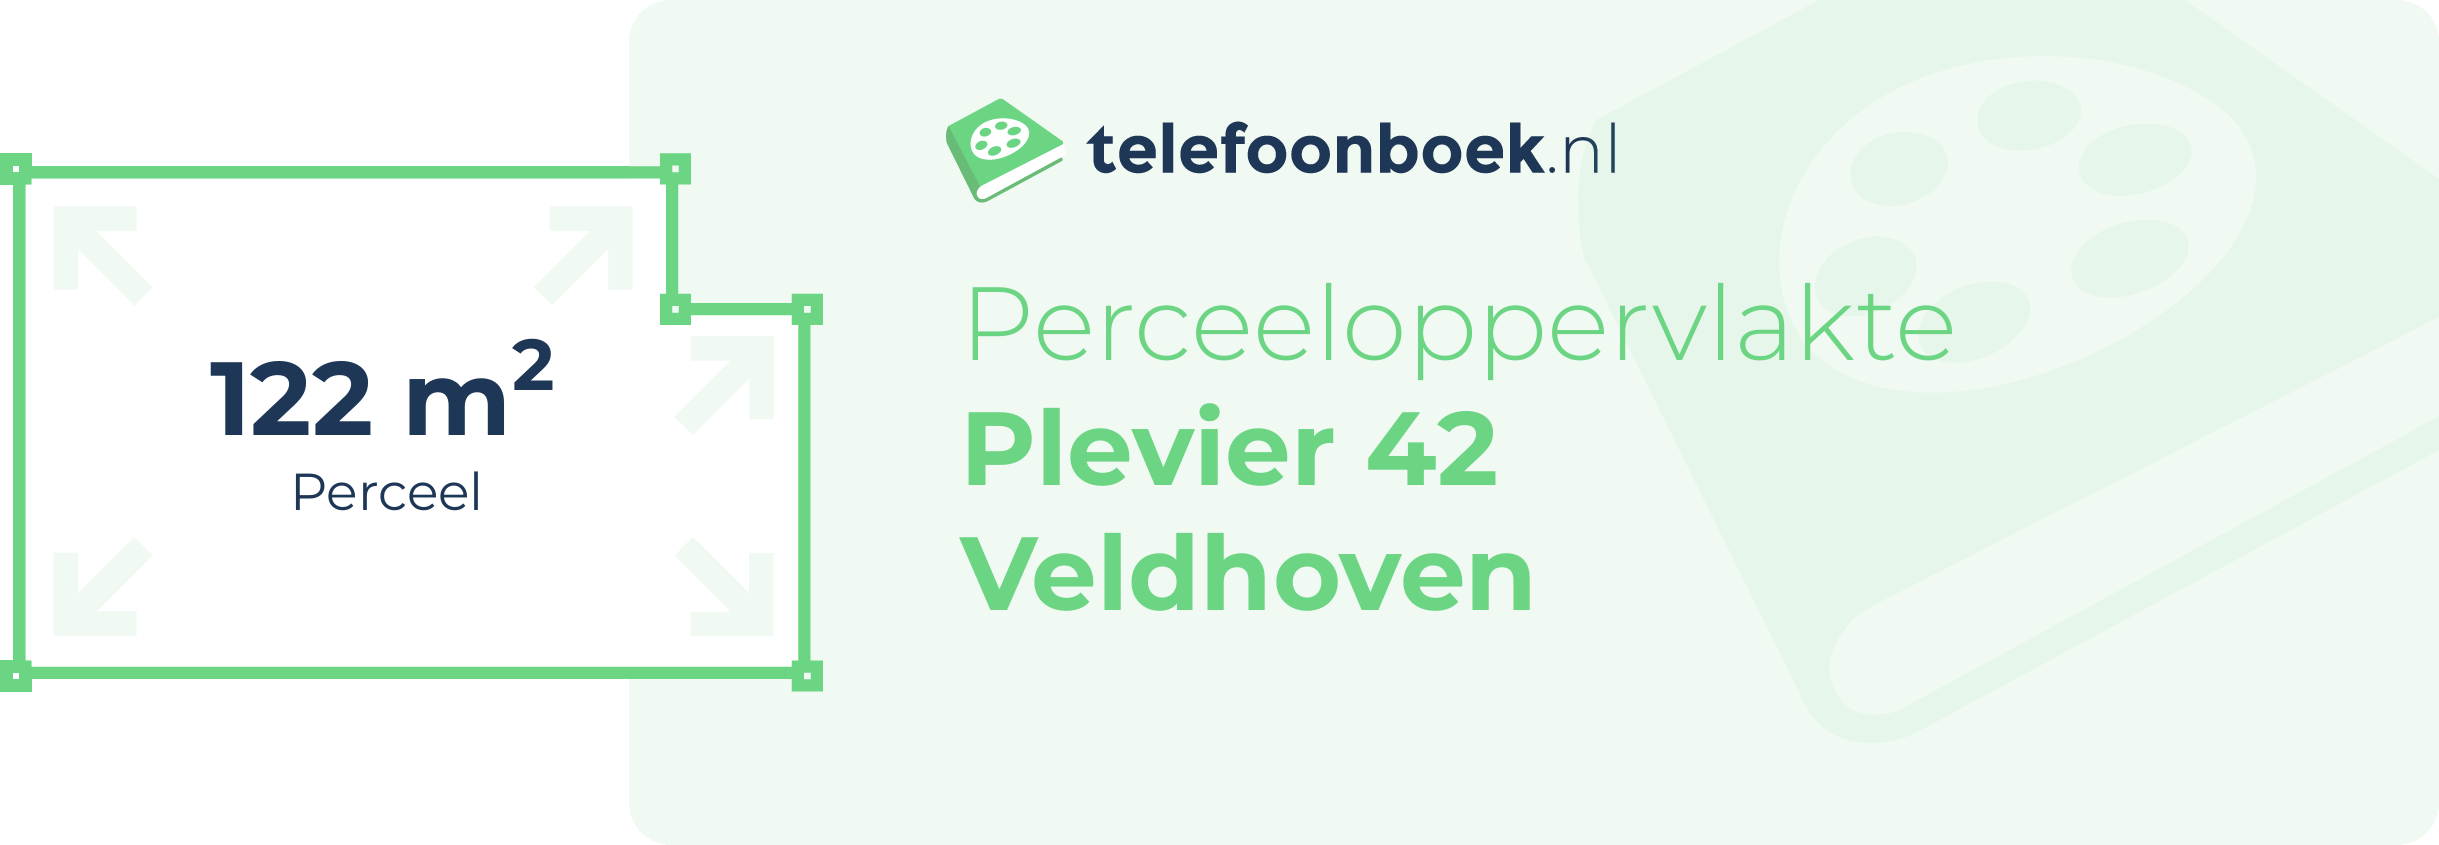 Perceeloppervlakte Plevier 42 Veldhoven